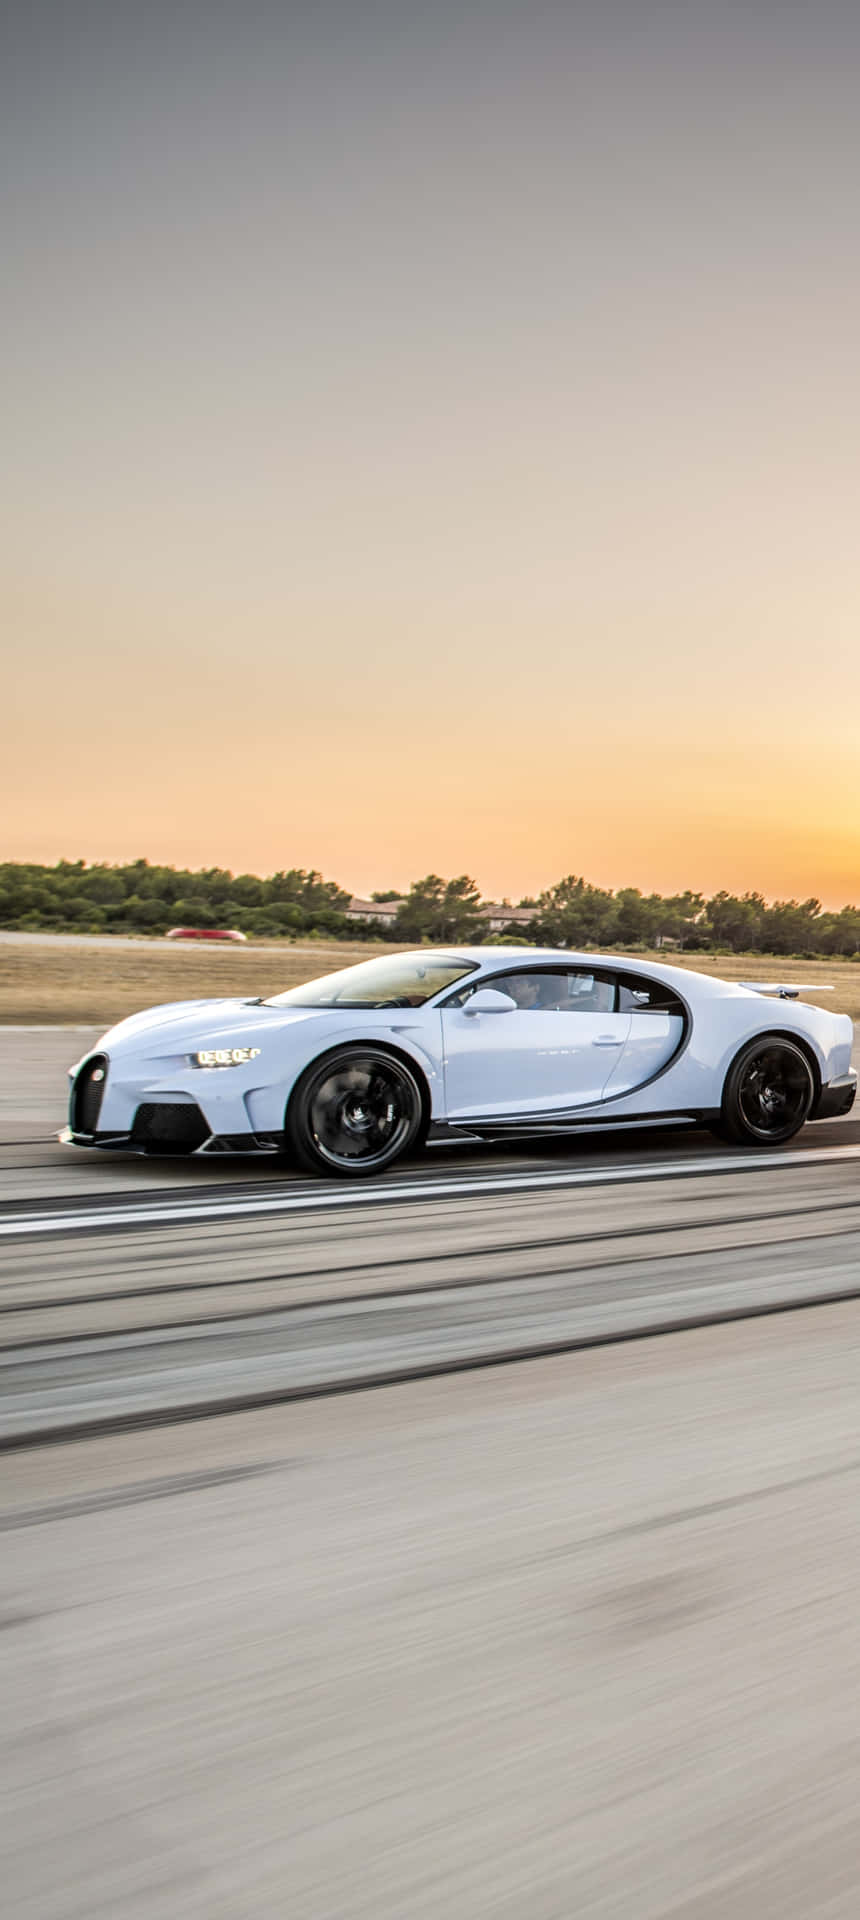 Bugatti Chiron - The Ultimate Supercar Wallpaper